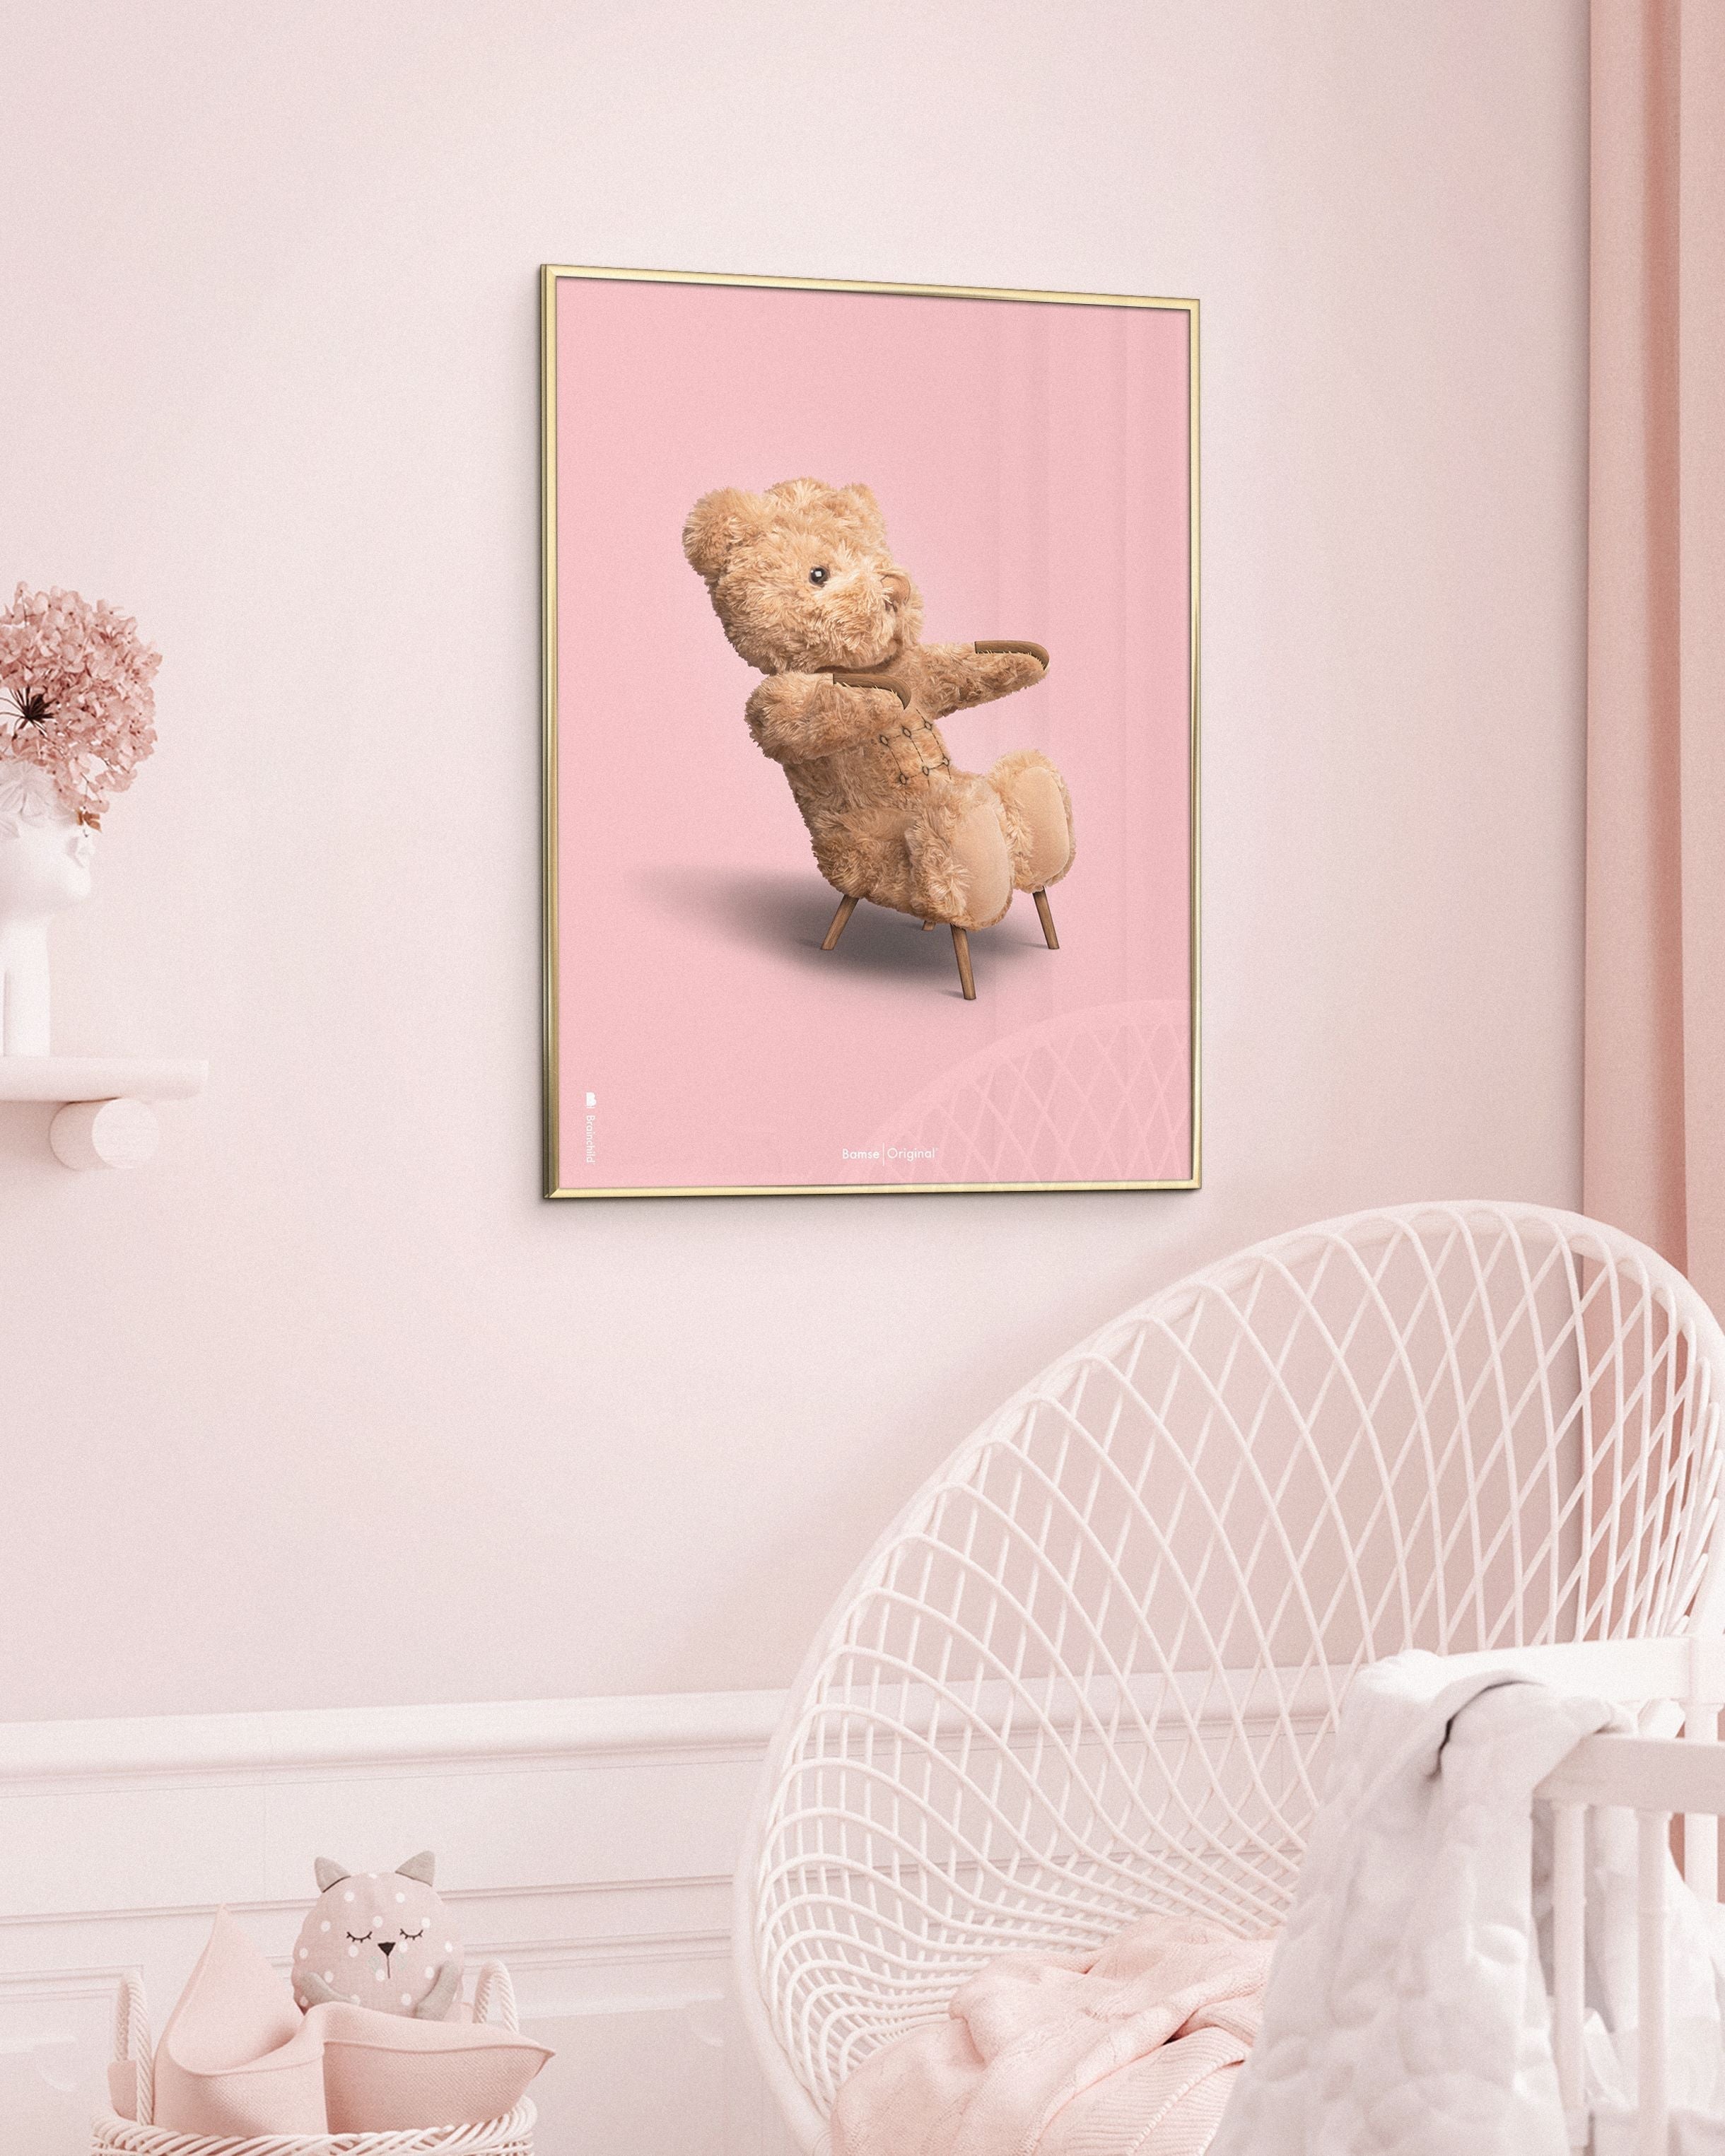 Brainchild Teddybär Classic Poster Frame aus dunklem Holz Ram 50x70 Cm, rosa Hintergrund